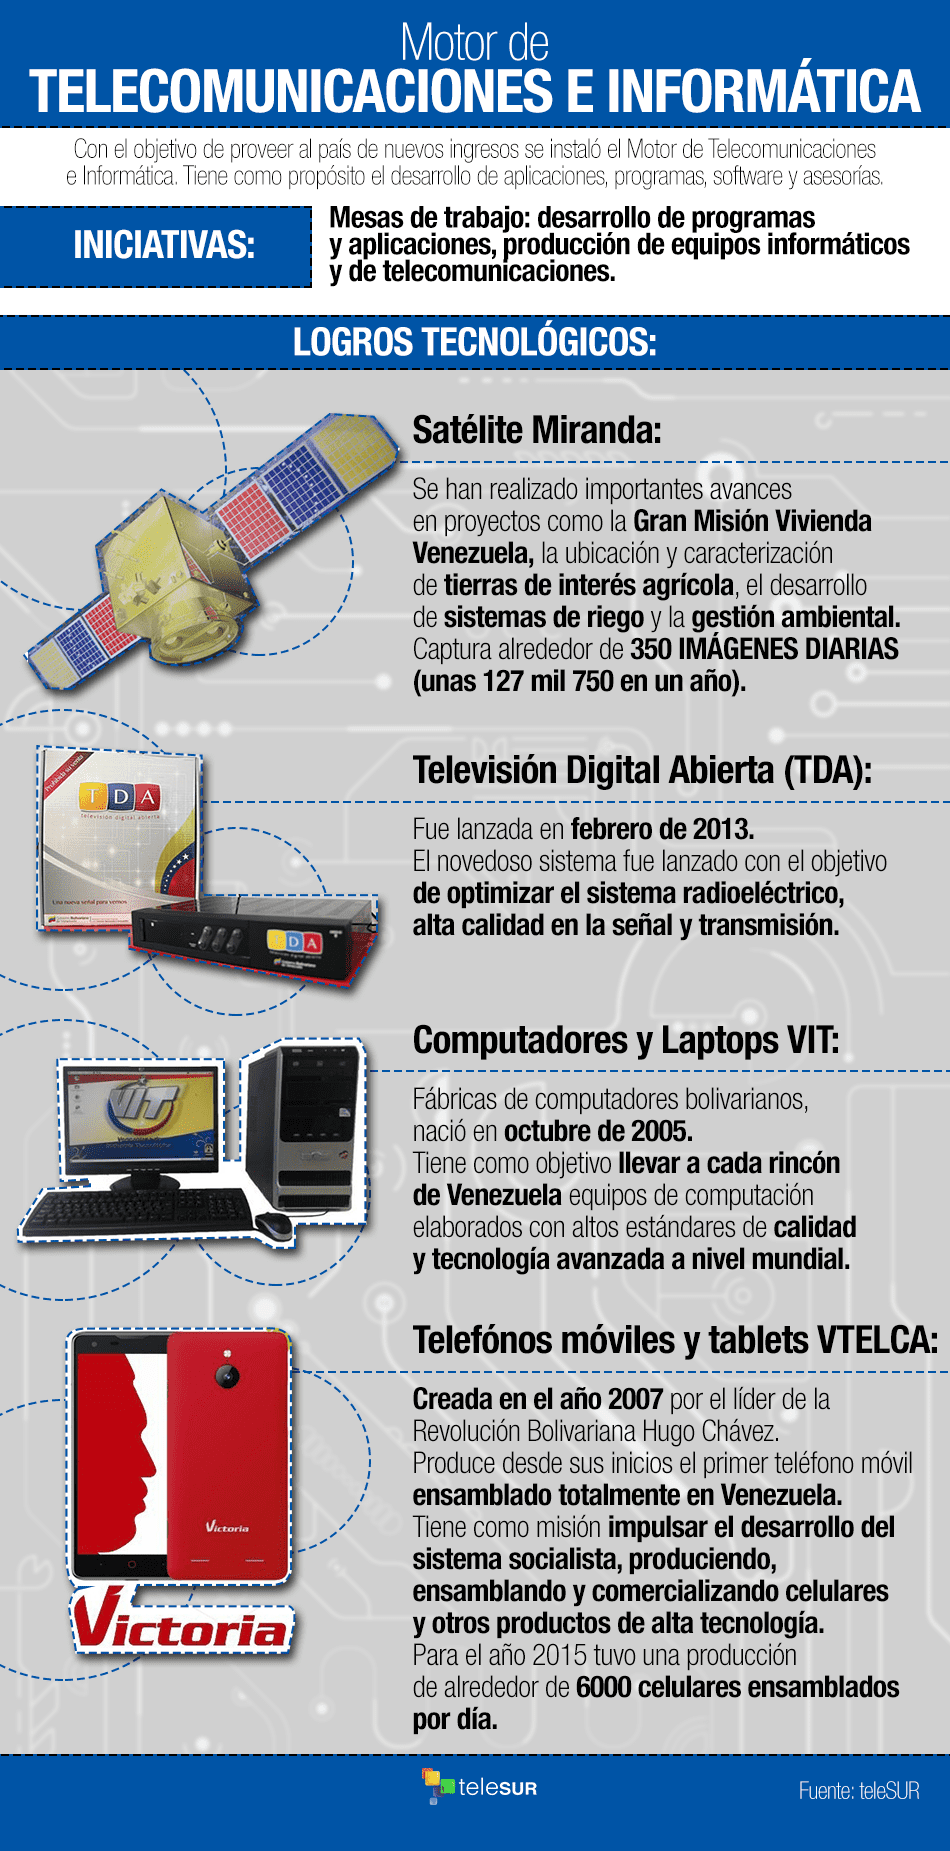 Telecomunicaciones e Informática, uno de los 13 motores para el desarrollo económico de Venezuela